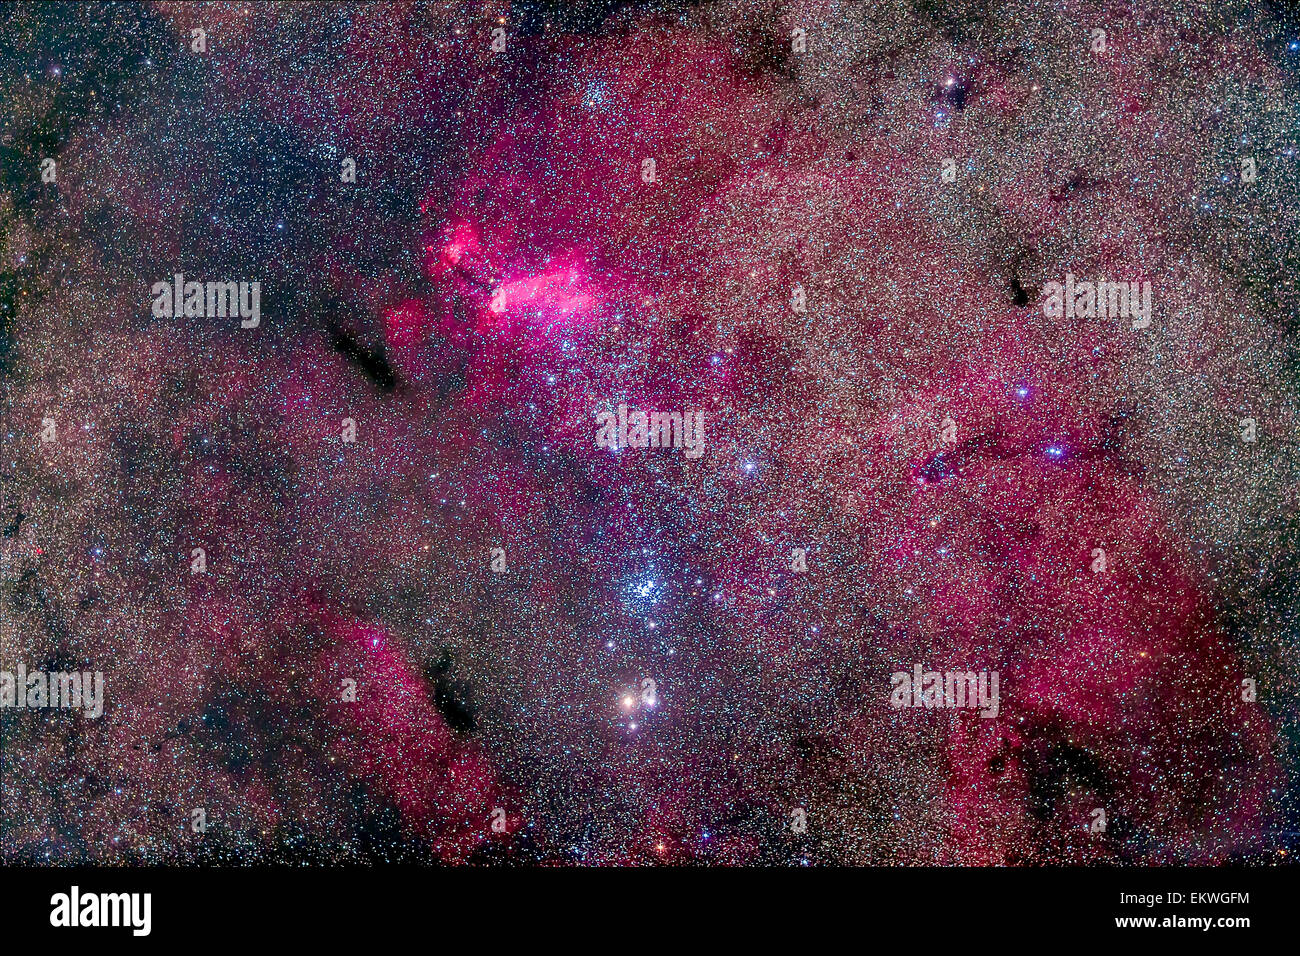 Le Faux Groupe de comètes du sud de Scorpius, qui comprend l'amas ouvert NGC 6231 et IC 4628, nébuleuse et ope Banque D'Images